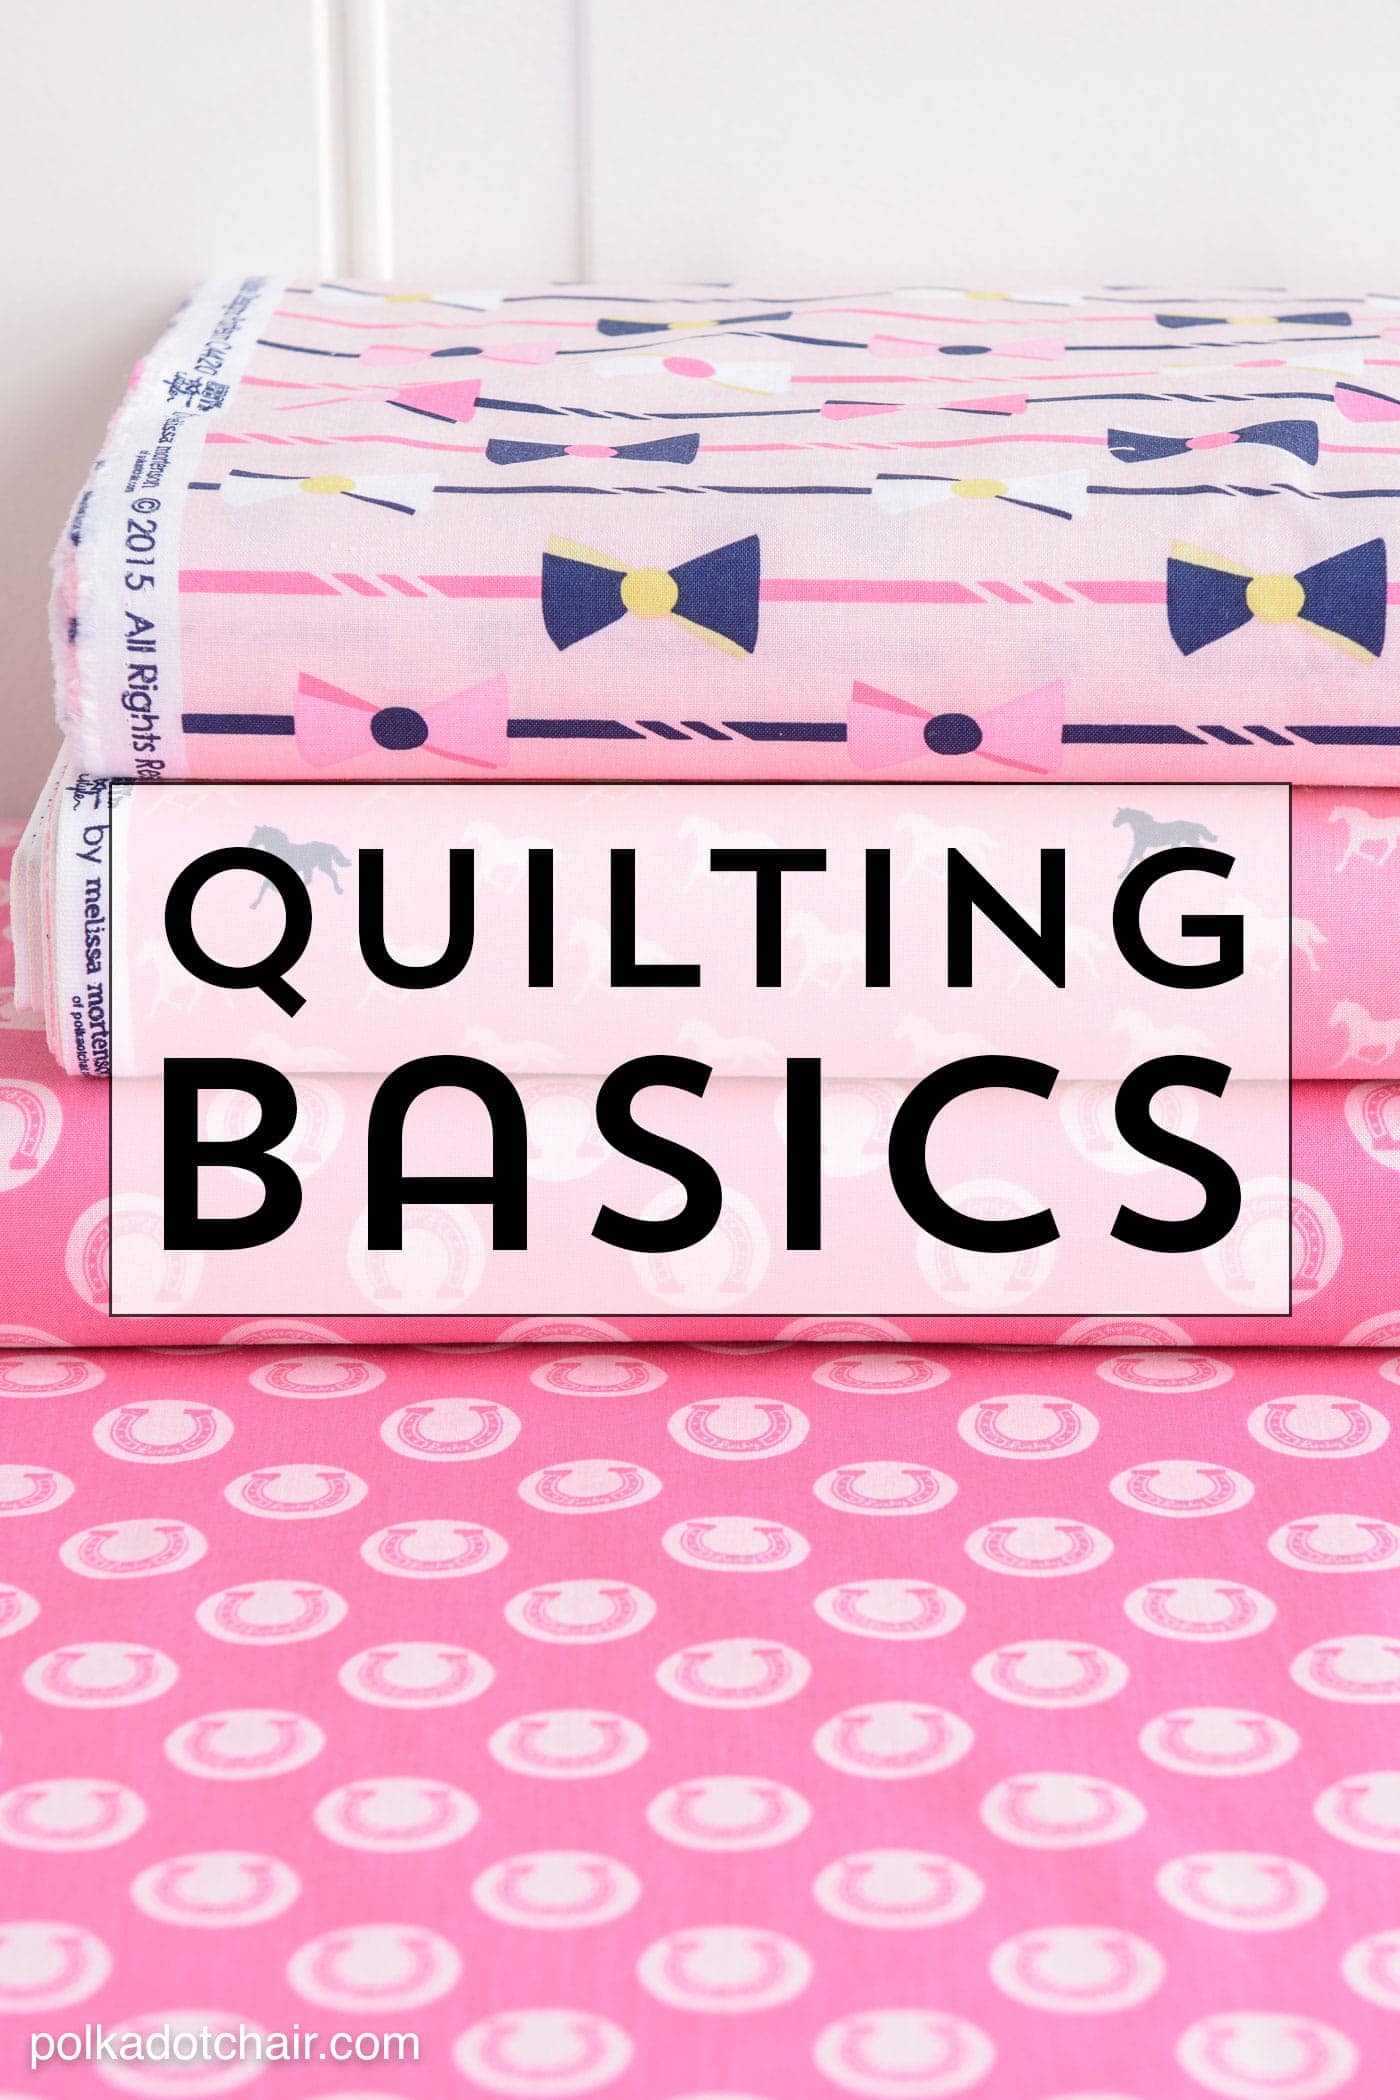 Apprenez quelques bases du quilting pour vous aider à démarrer si vous êtes un quilteur débutant.